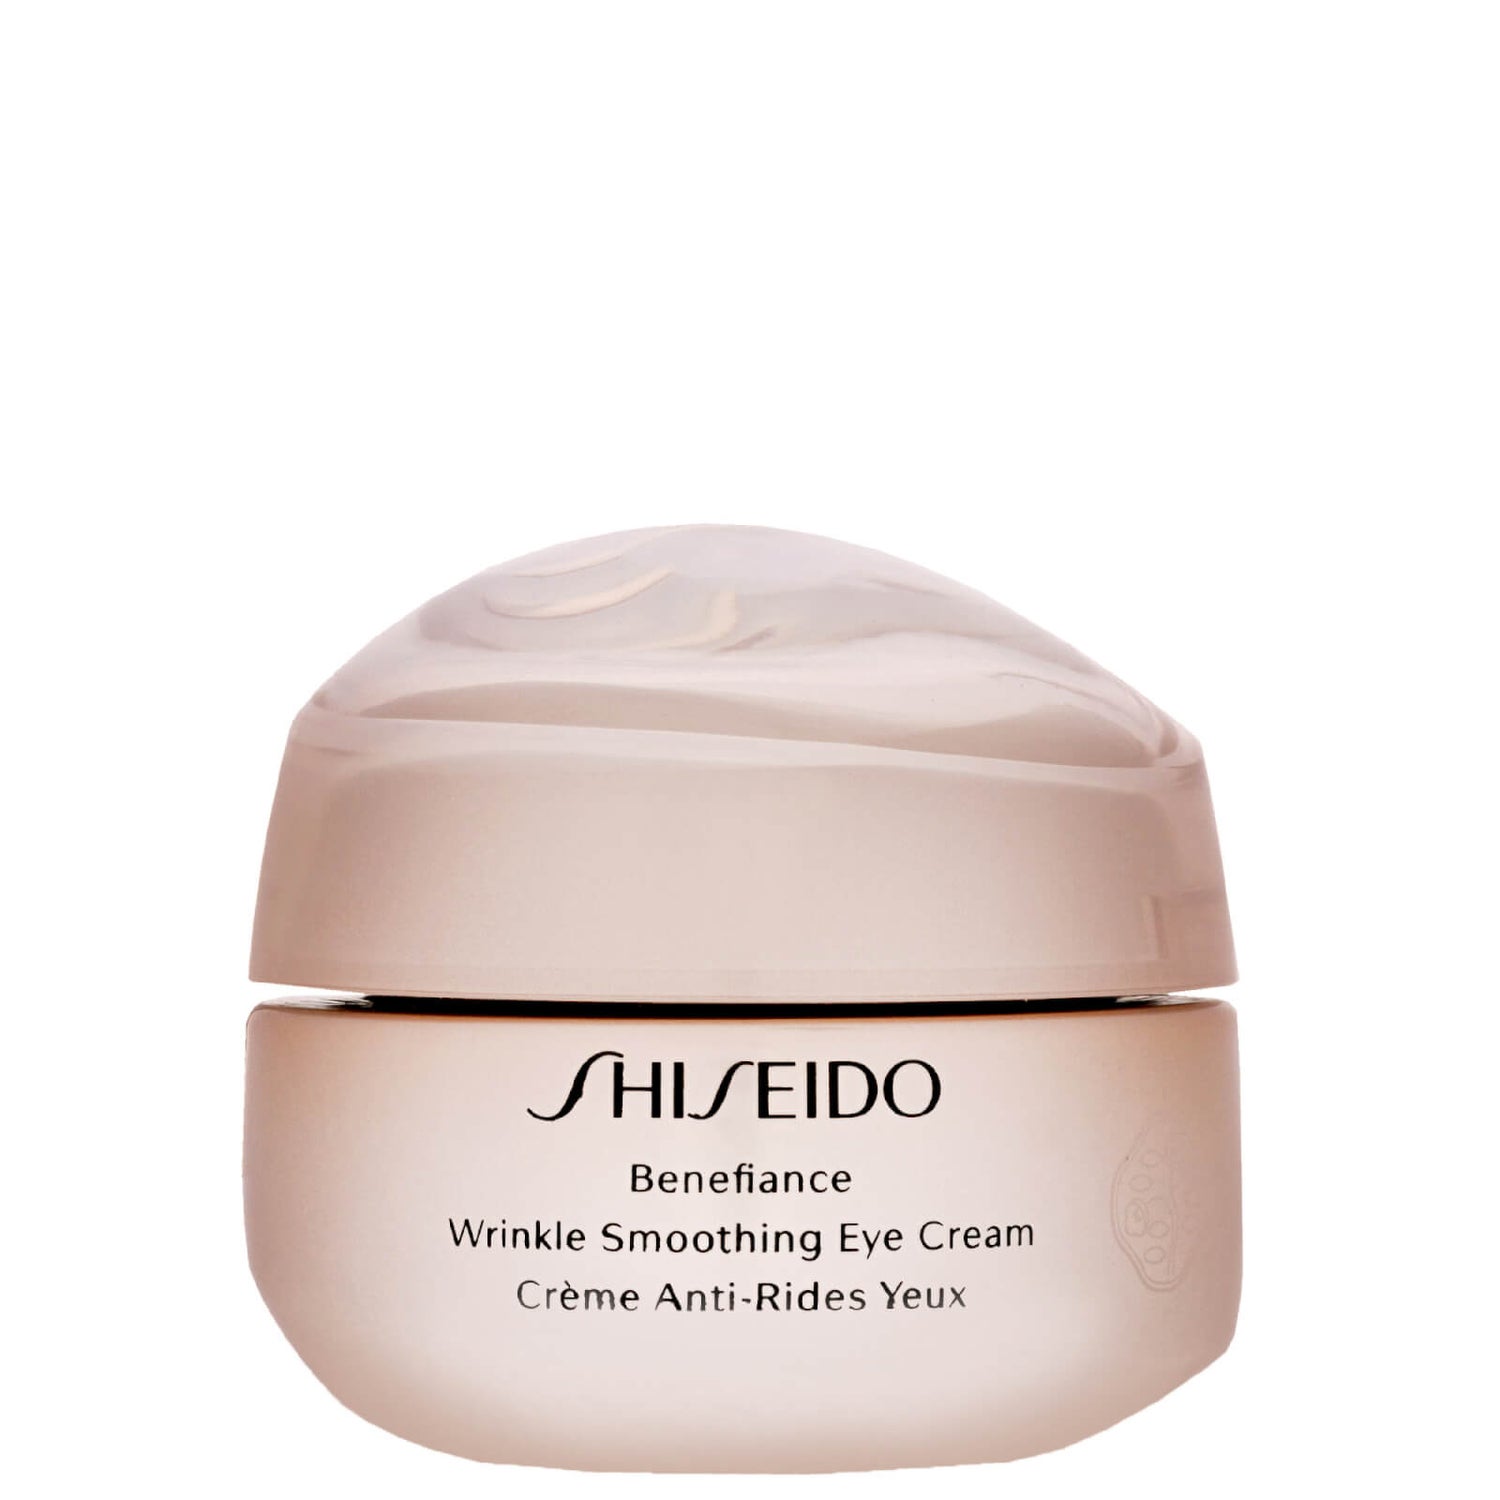 Shiseido benefiance wrinkle smoothing. Shiseido Benefiance Eye Cream. Shiseido Wrinkle Smoothing Cream. Shiseido Anti Wrinkle Cream. Shiseido Benefiance Eye Cream купить.